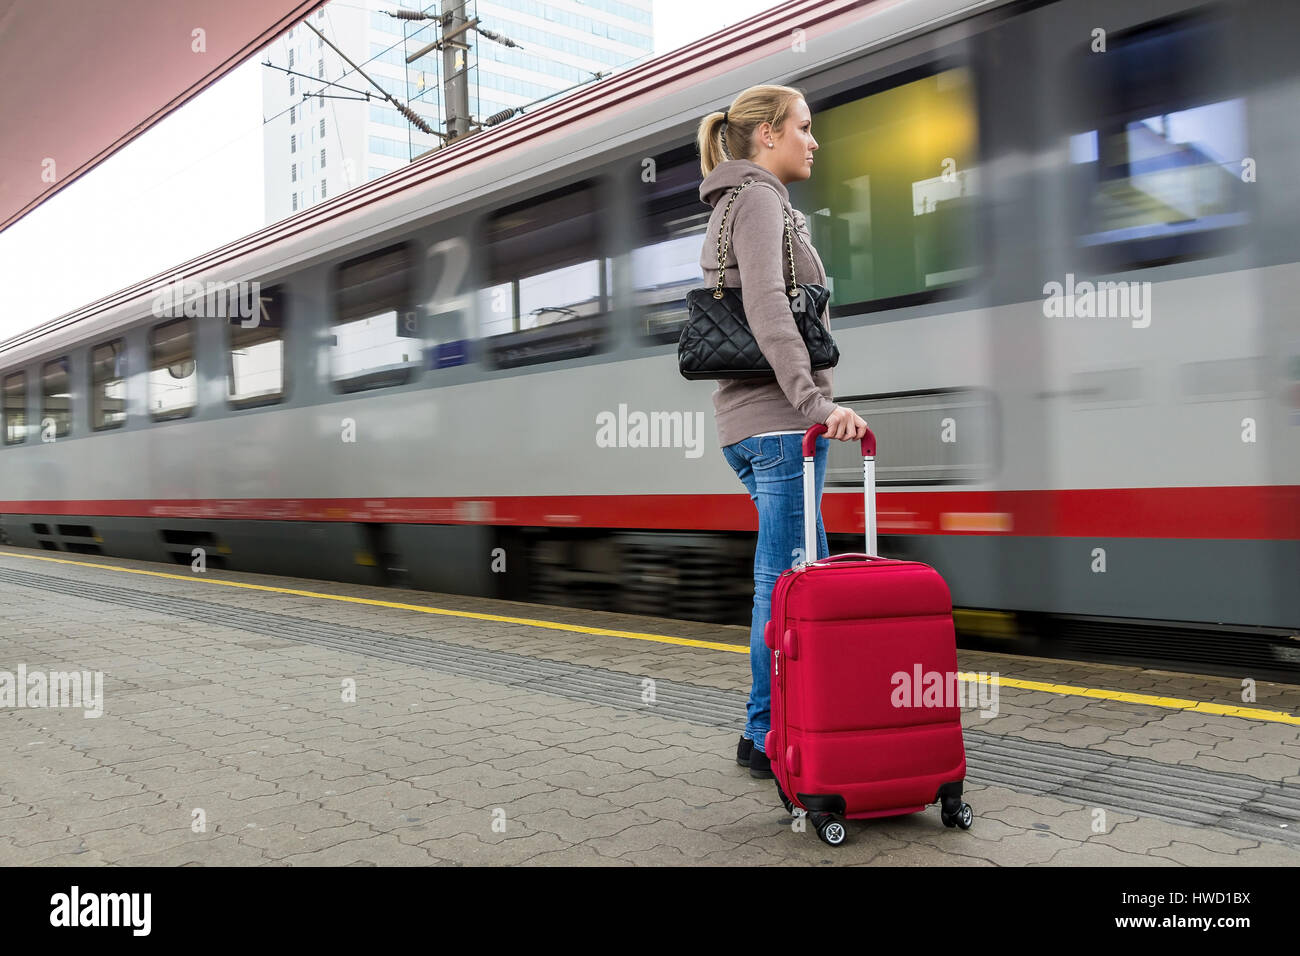 A young woman waits for a train in a railway station. Train journey in the vacation, Eine junge Frau wartet auf einen  Zug in einem Bahnhof. Zugfahrt  Stock Photo